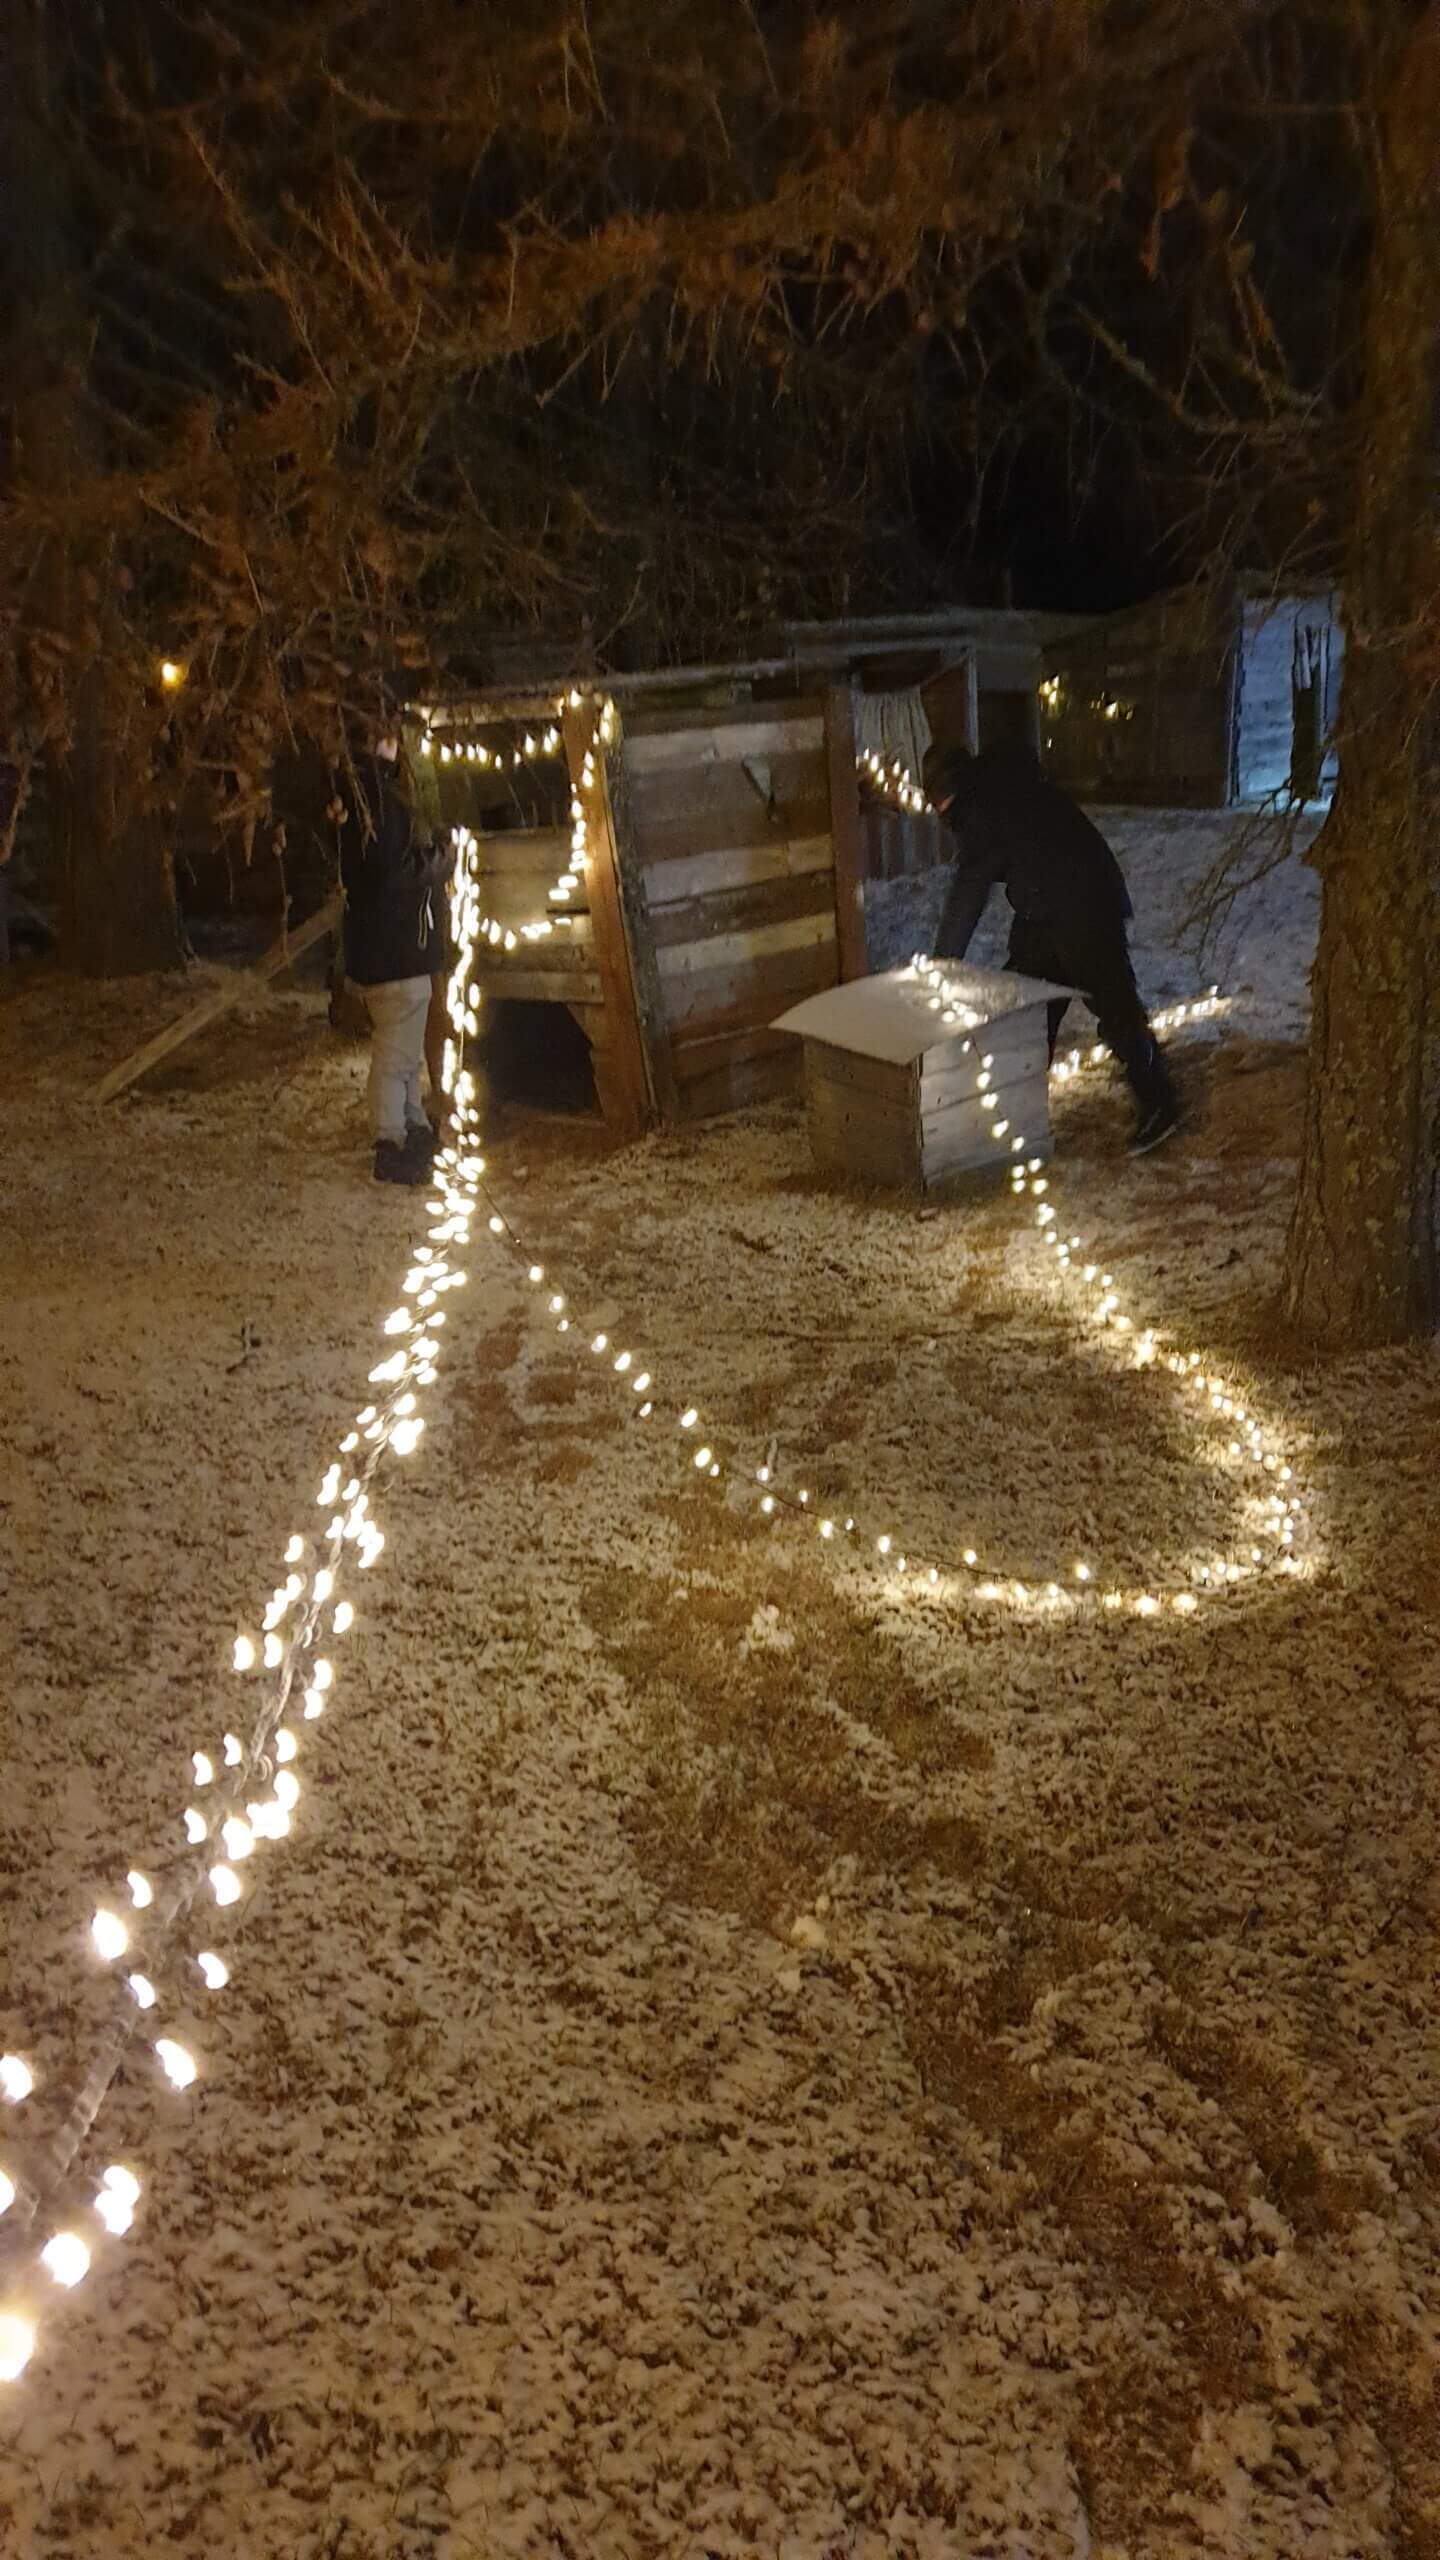 Ihminen laittamassa valonauhoja lumiselle pihamaalle ja puumajaan.